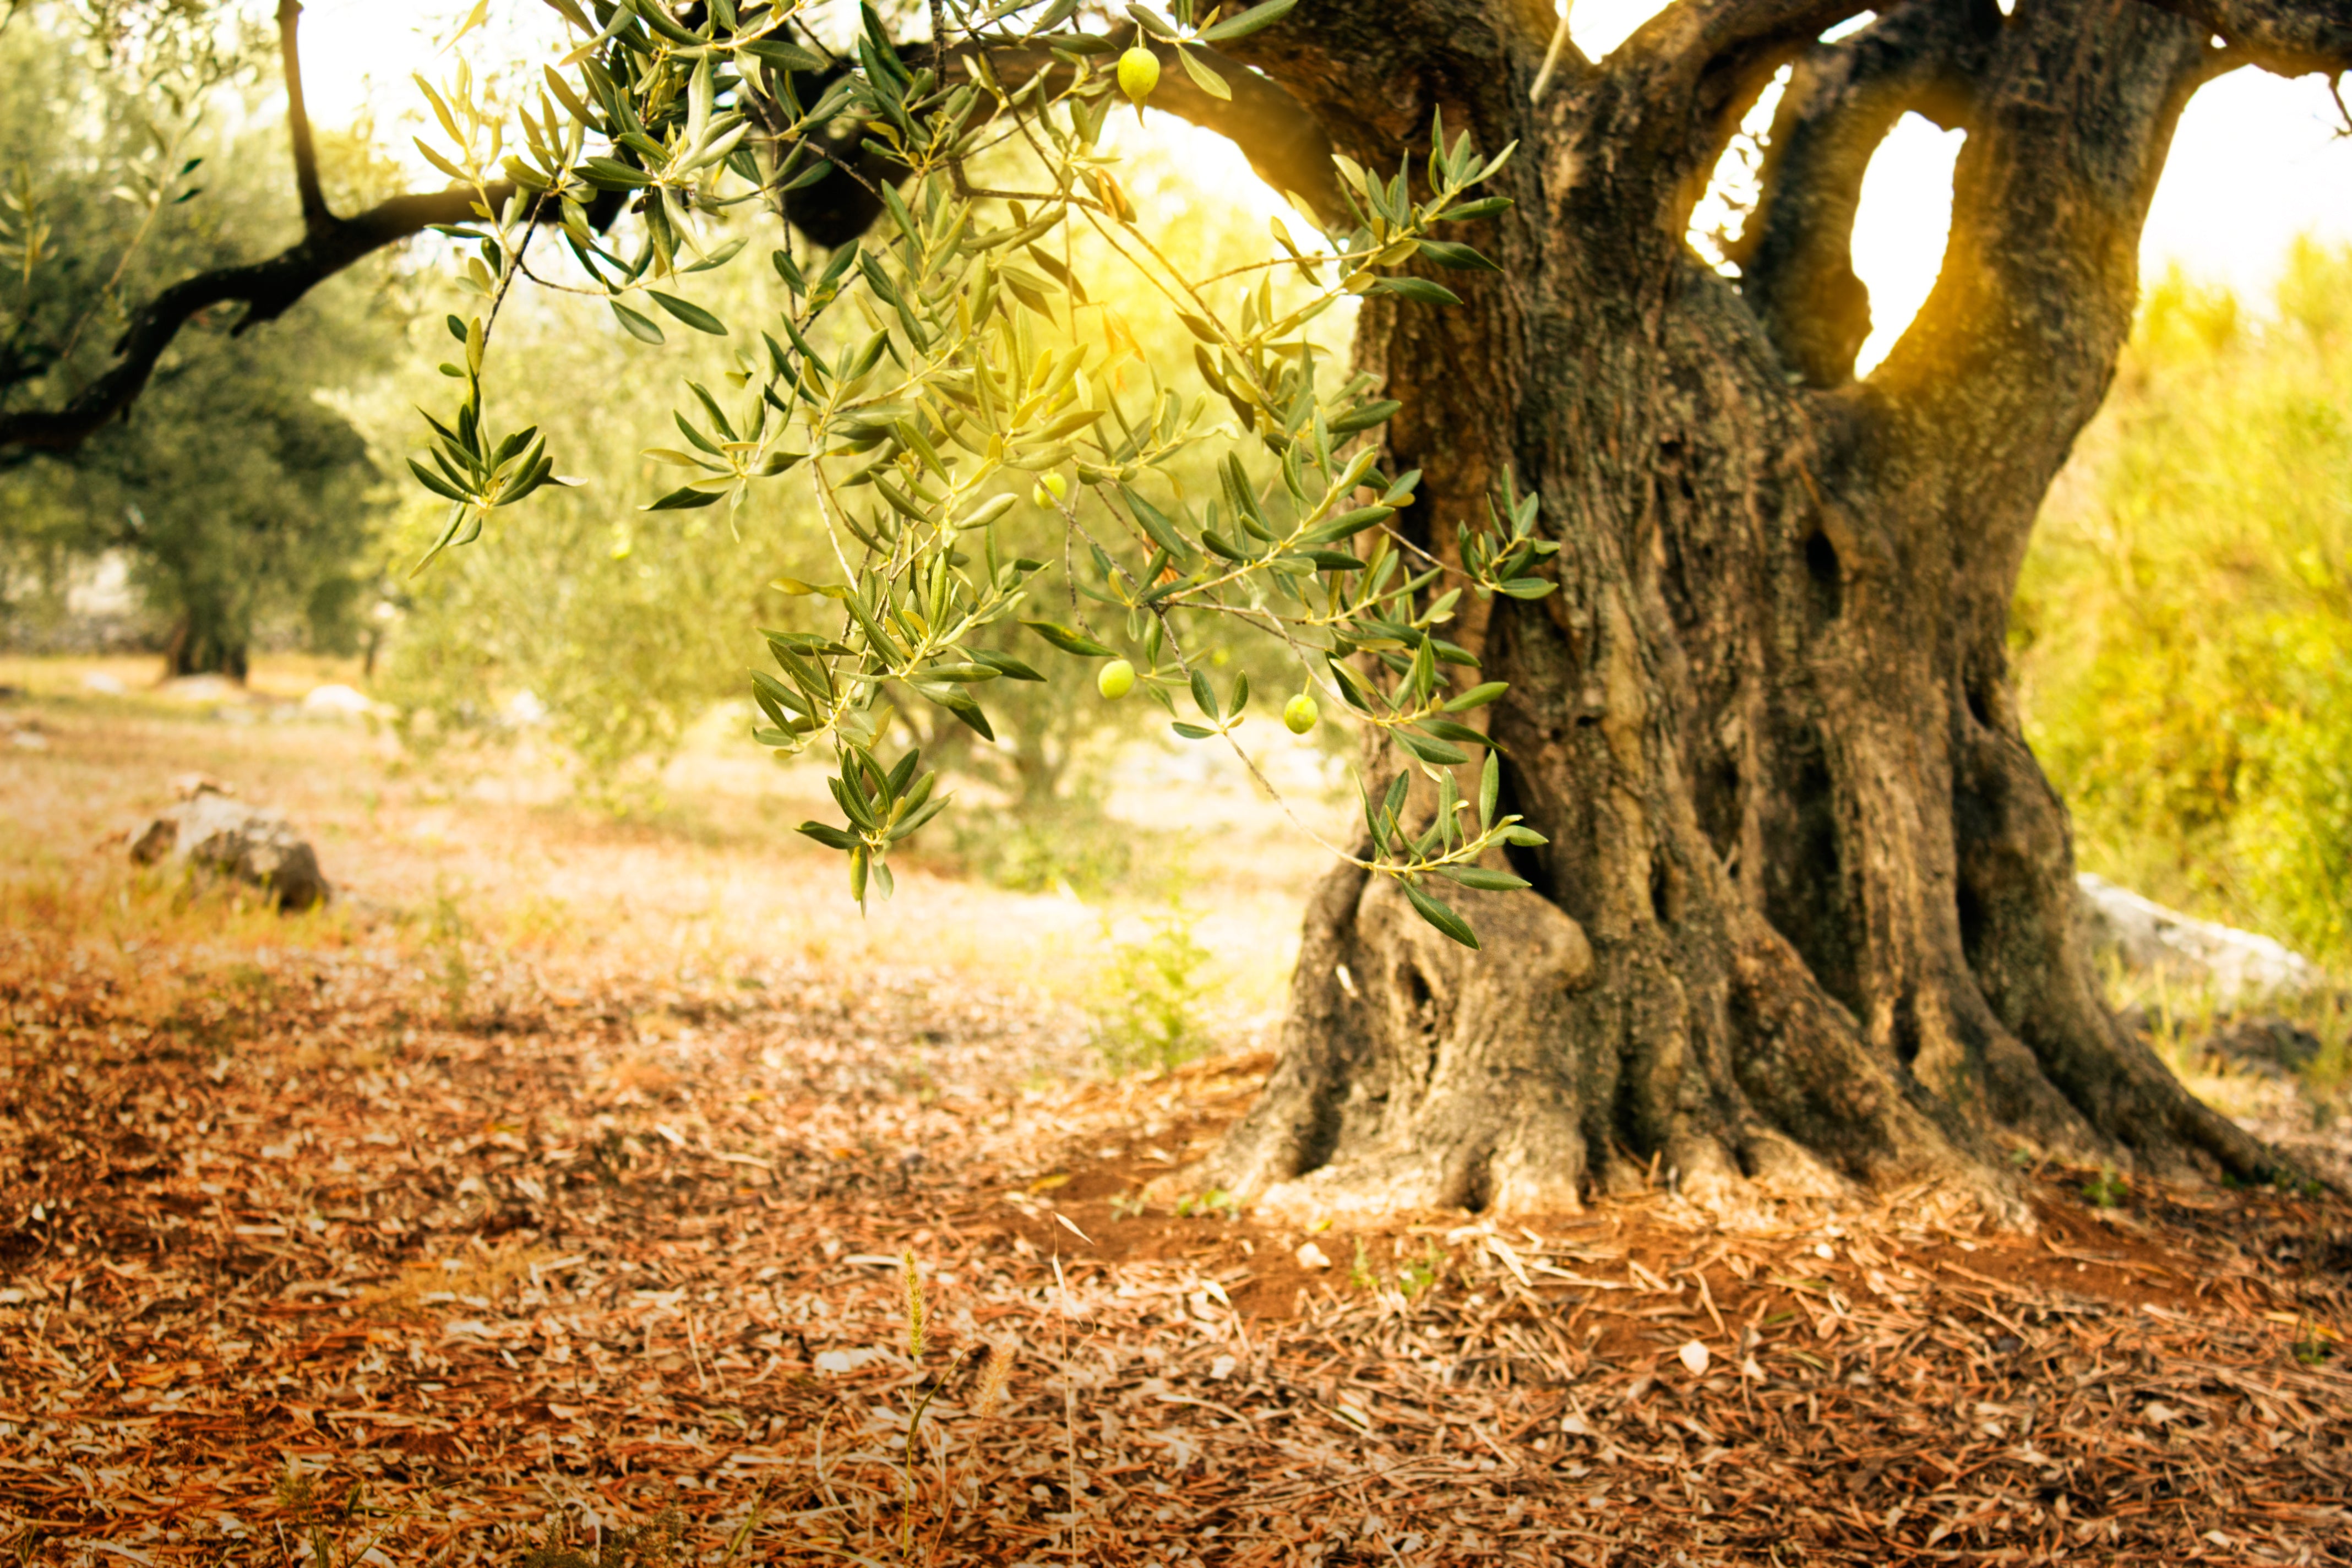 Olive Wood Utensils Holder - Forest Decor